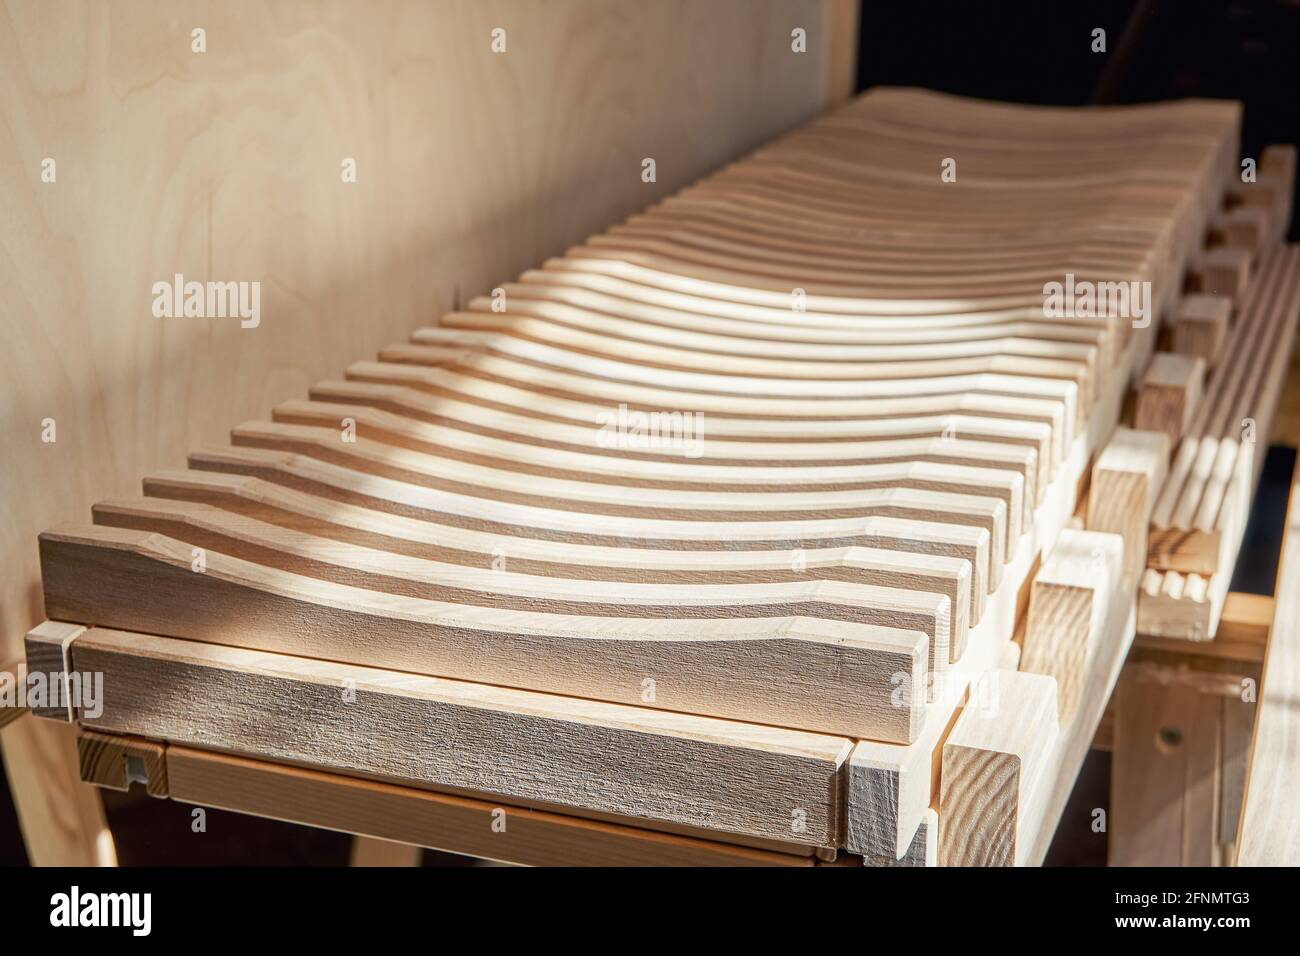 Stilvoller Geschirrtrocknungsständer aus leichter Massivholz-Esche Holz in der Nähe Sperrholz Schrank in der modernen Schreinerei Werkstatt extrem nah Anzeigen Stockfoto